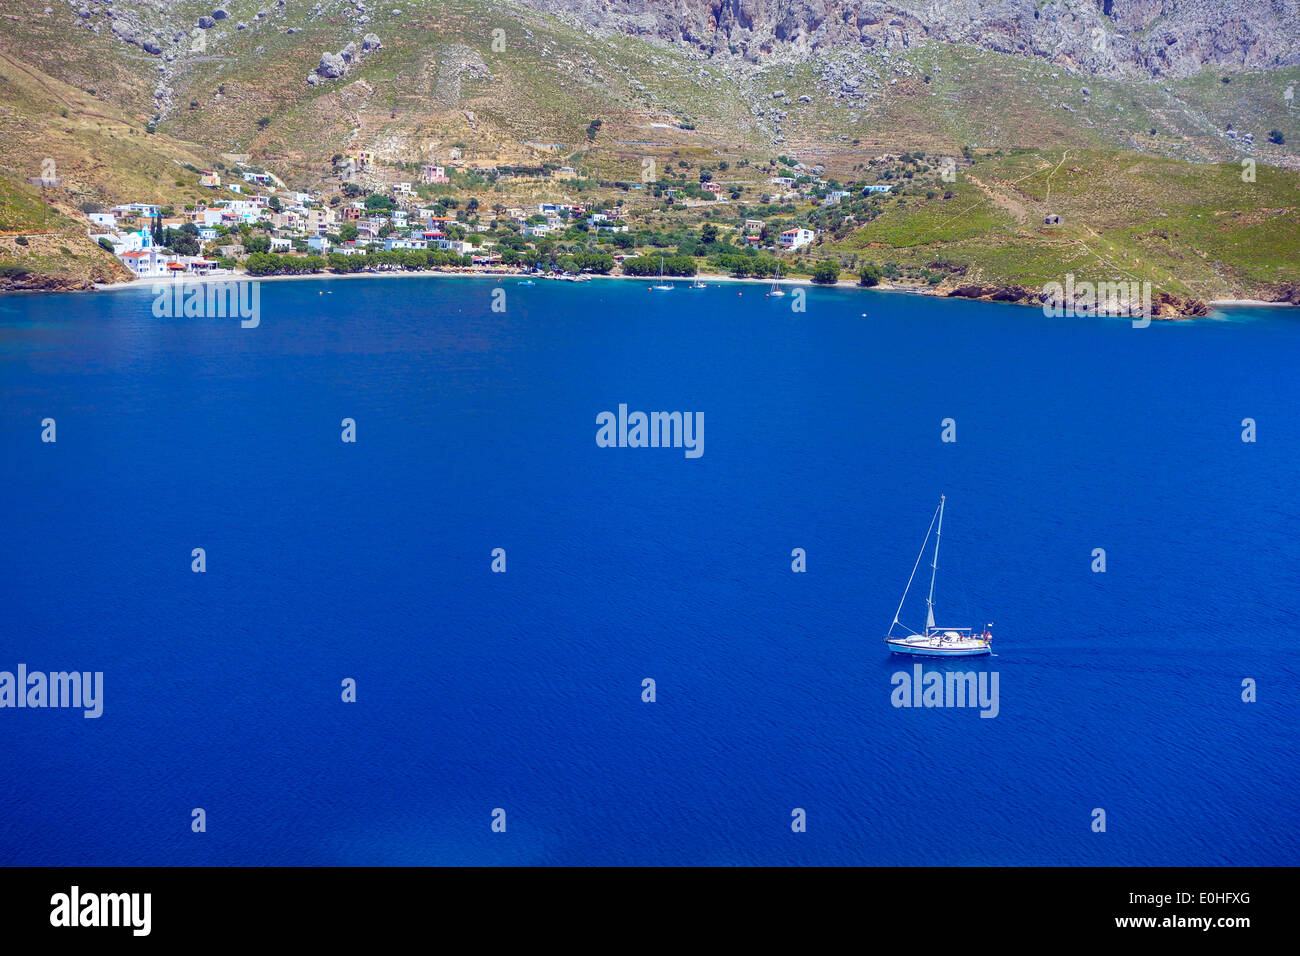 Yacht blanc sur la mer bleue de la baie, avec les collines environnantes, Grèce Banque D'Images